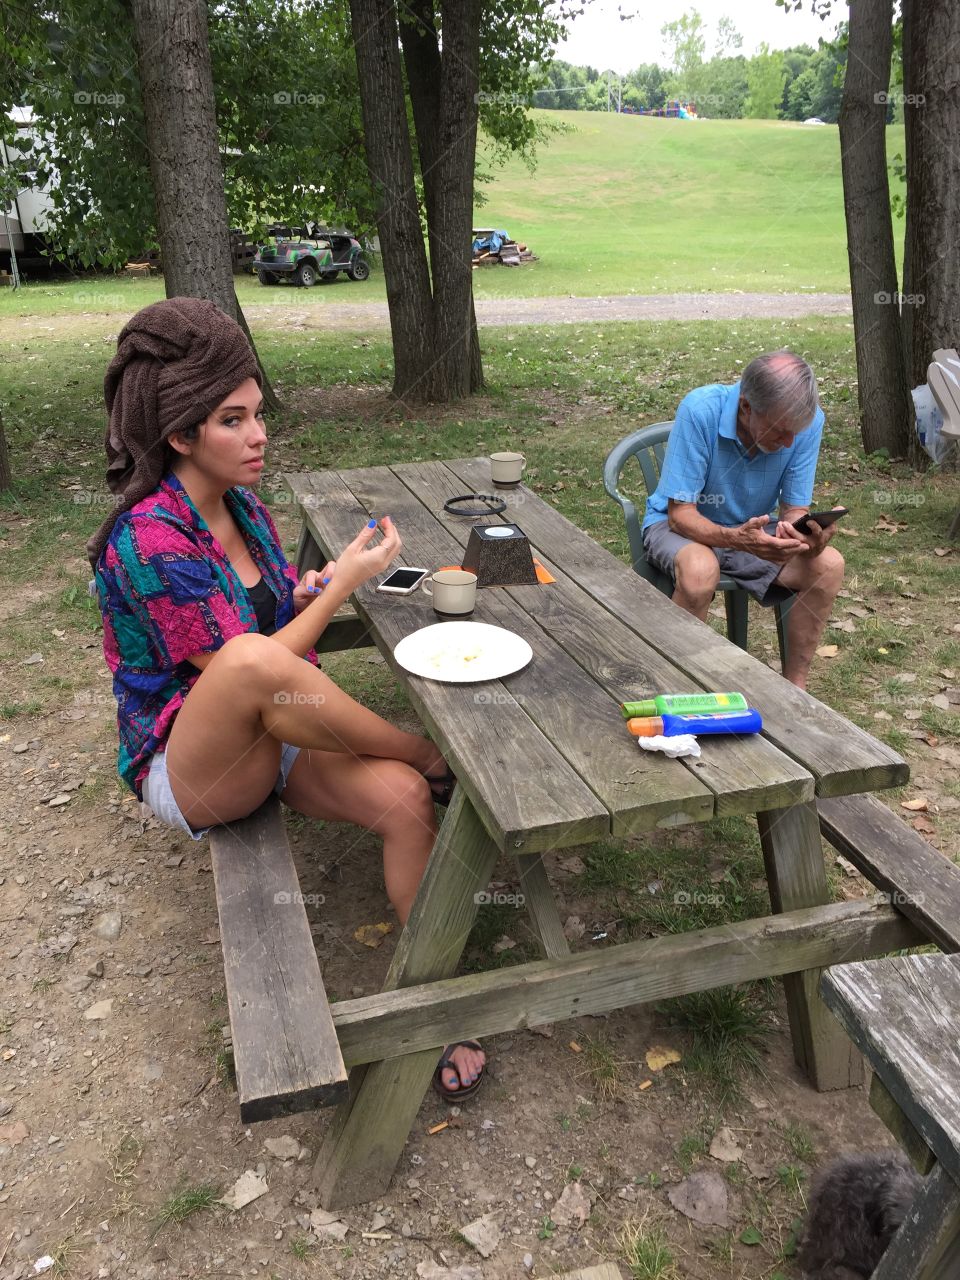 Woman and man at picnic table